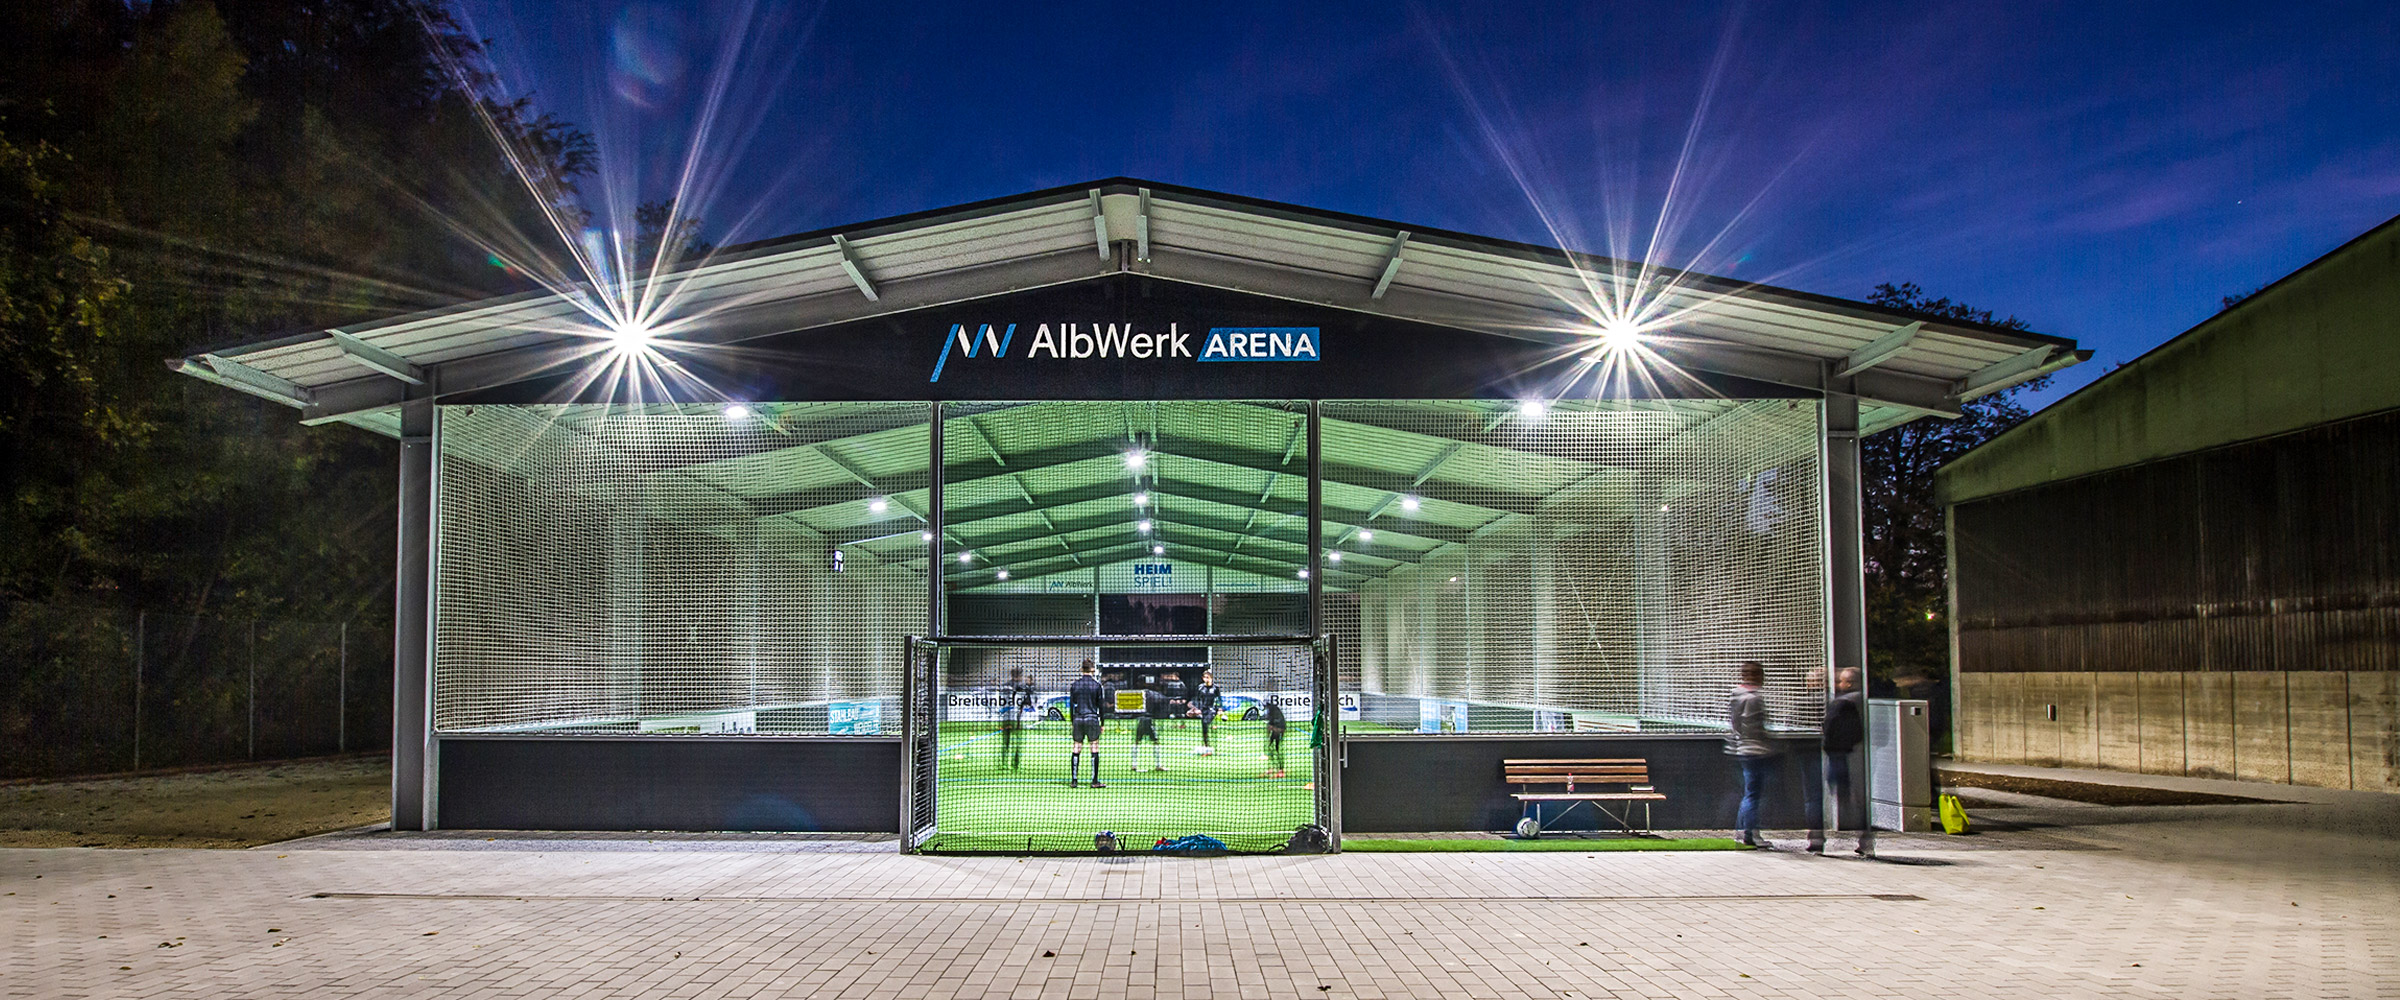 Die AlbWerk Arena Soccerhalle in Geislingen. Außenansicht der modernen Freilufthalle.